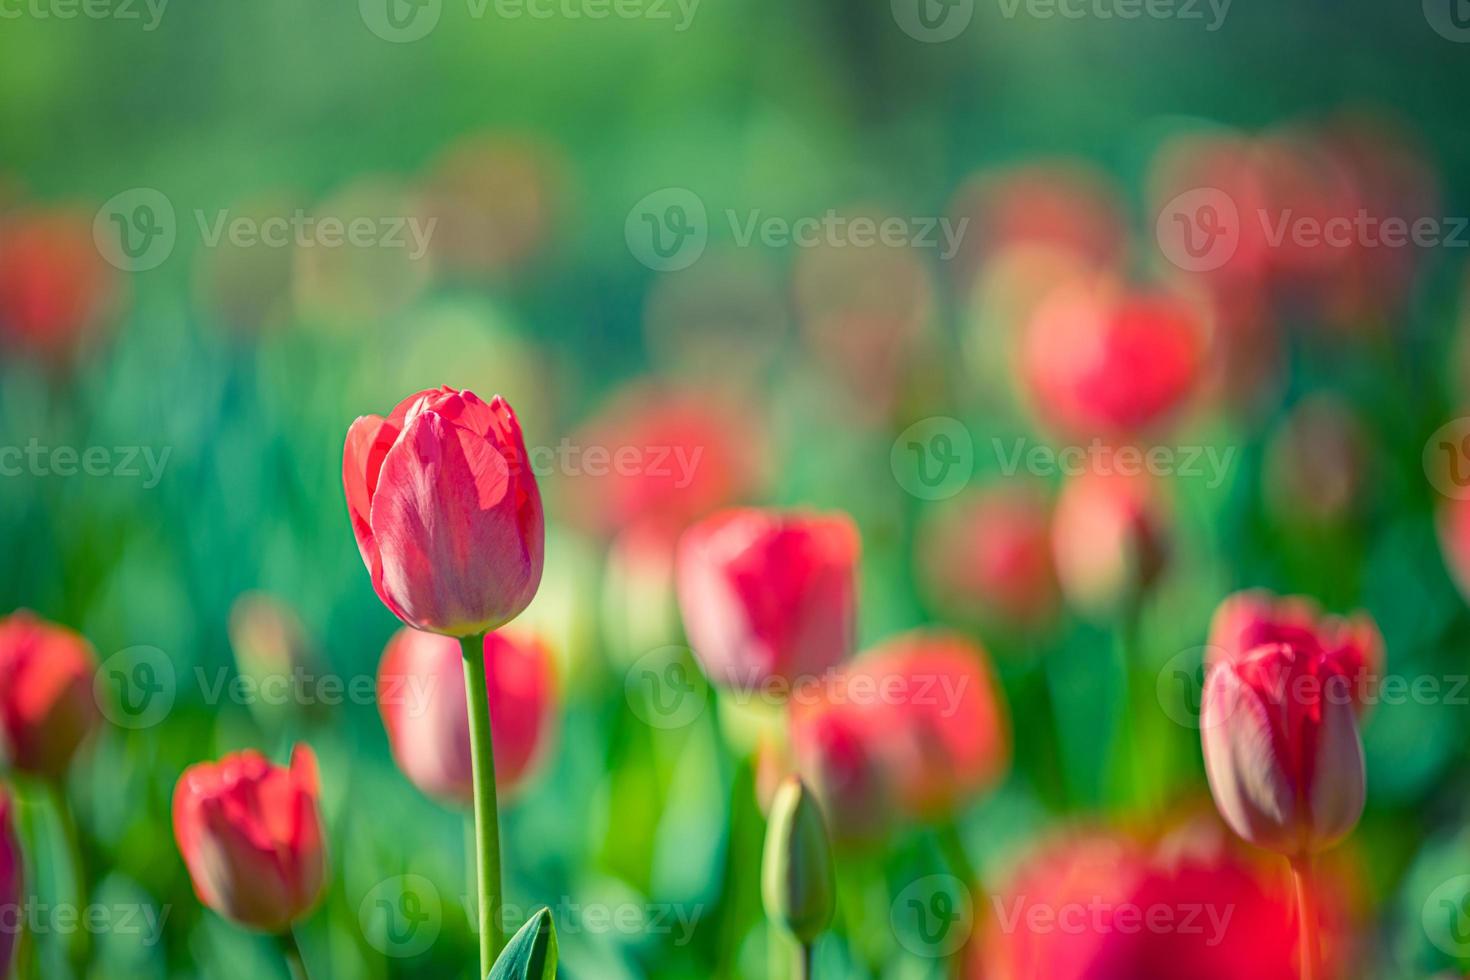 incroyable gros plan de la nature printanière. belles tulipes rouges pastel douces qui fleurissent dans un champ de tulipes dans un jardin avec un paysage de champ forestier flou, la lumière du soleil pour une affiche florale horizontale. inspirer l'amour romance photo